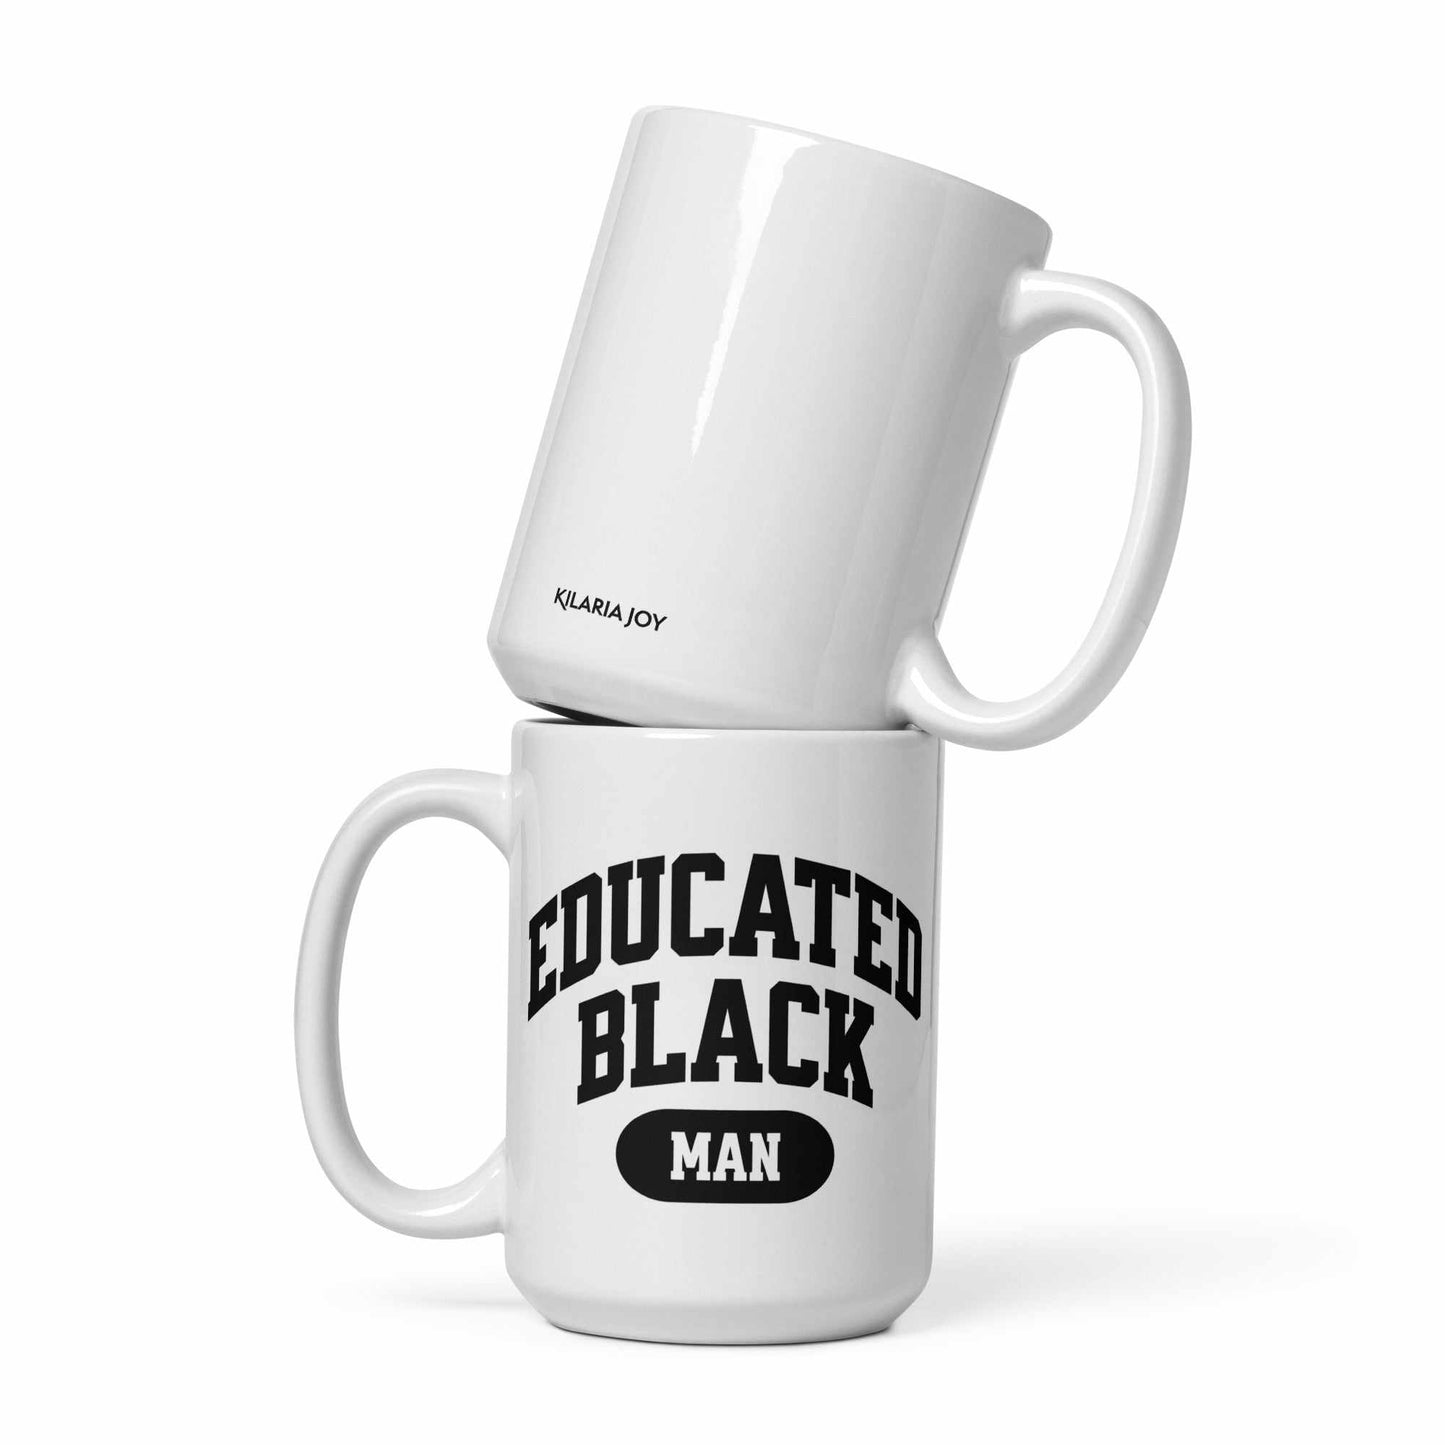 Educated Black Man Mug (11oz, 15oz, 20oz)